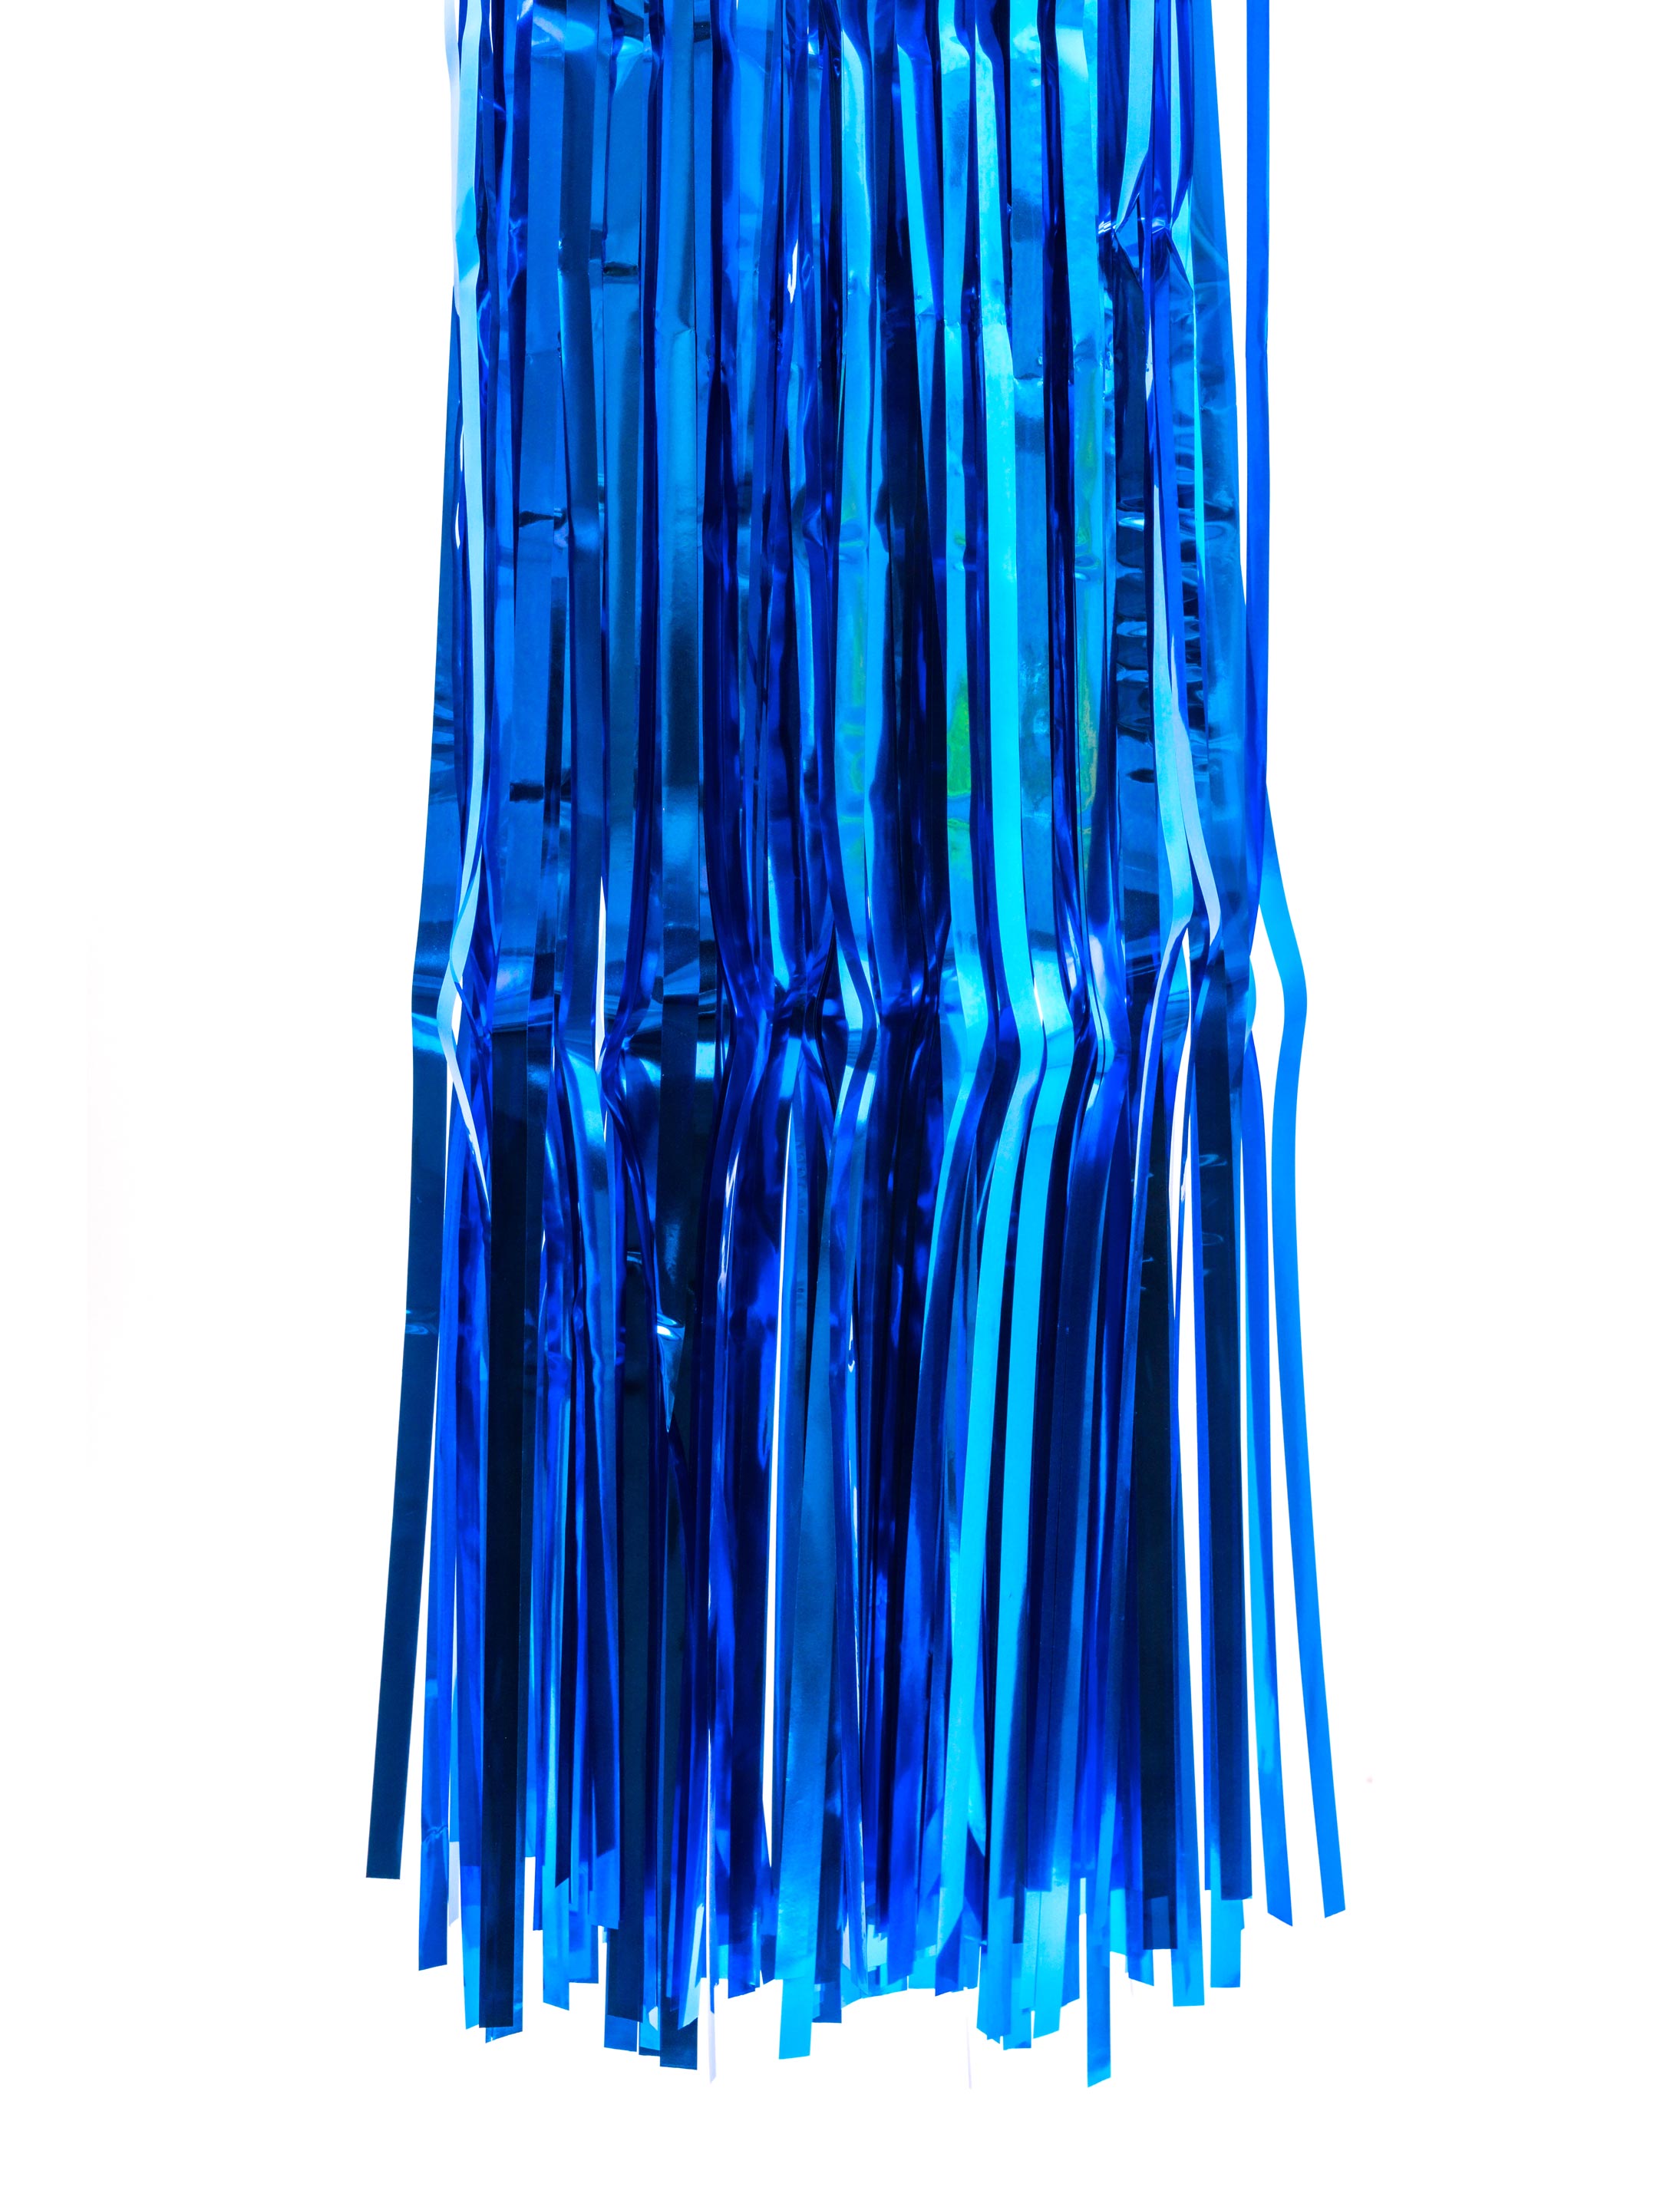 Fransenvorhang metallic blau